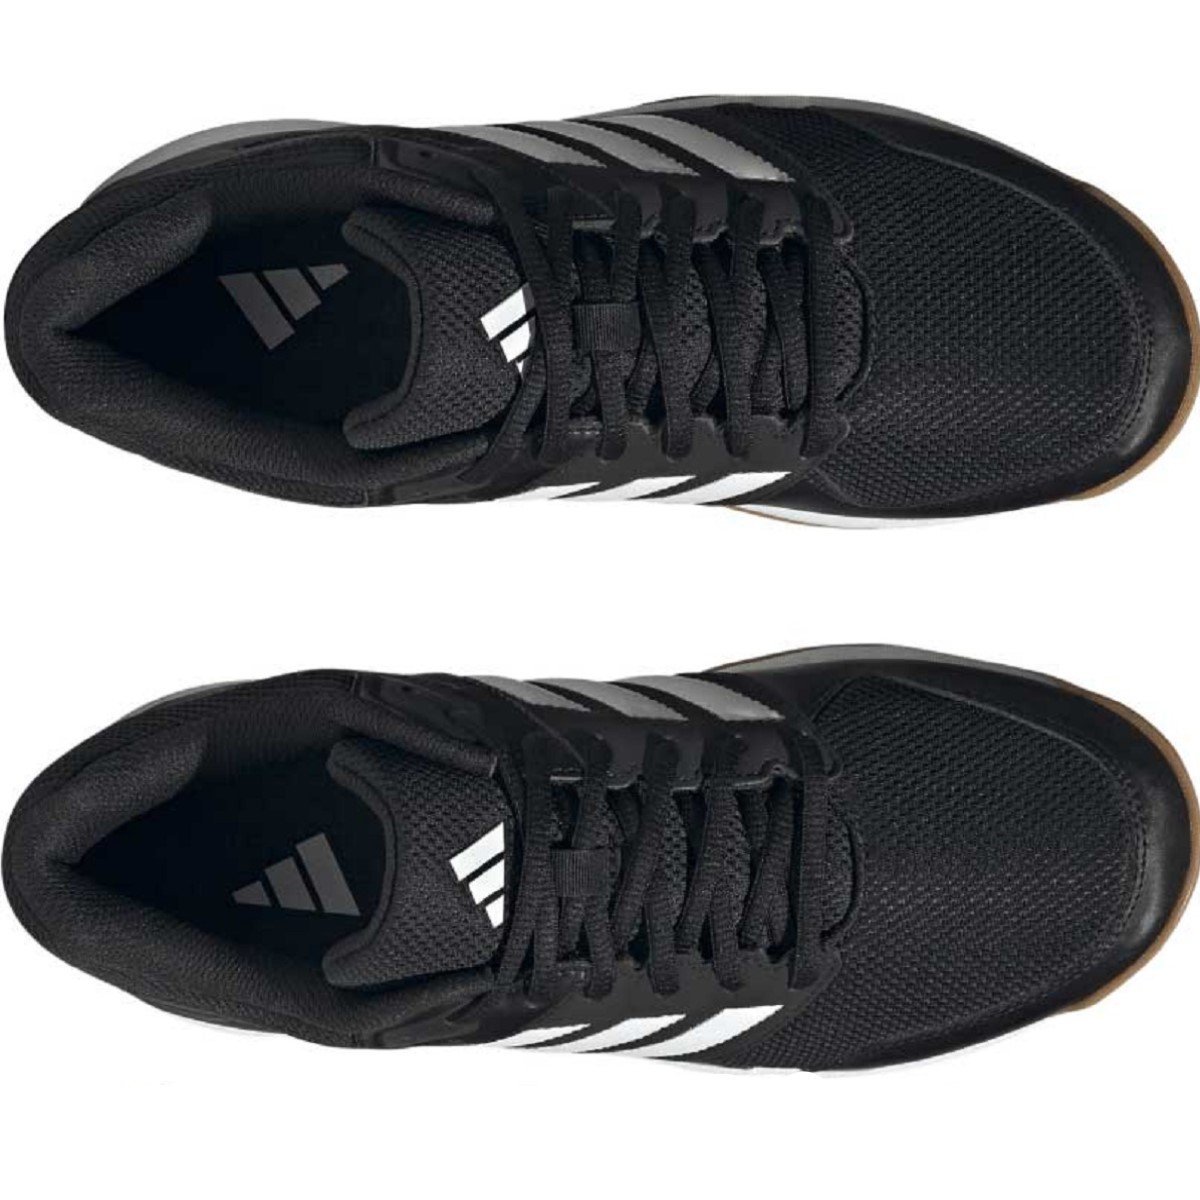 Obuv Adidas Speedcourt M - čierna/biela